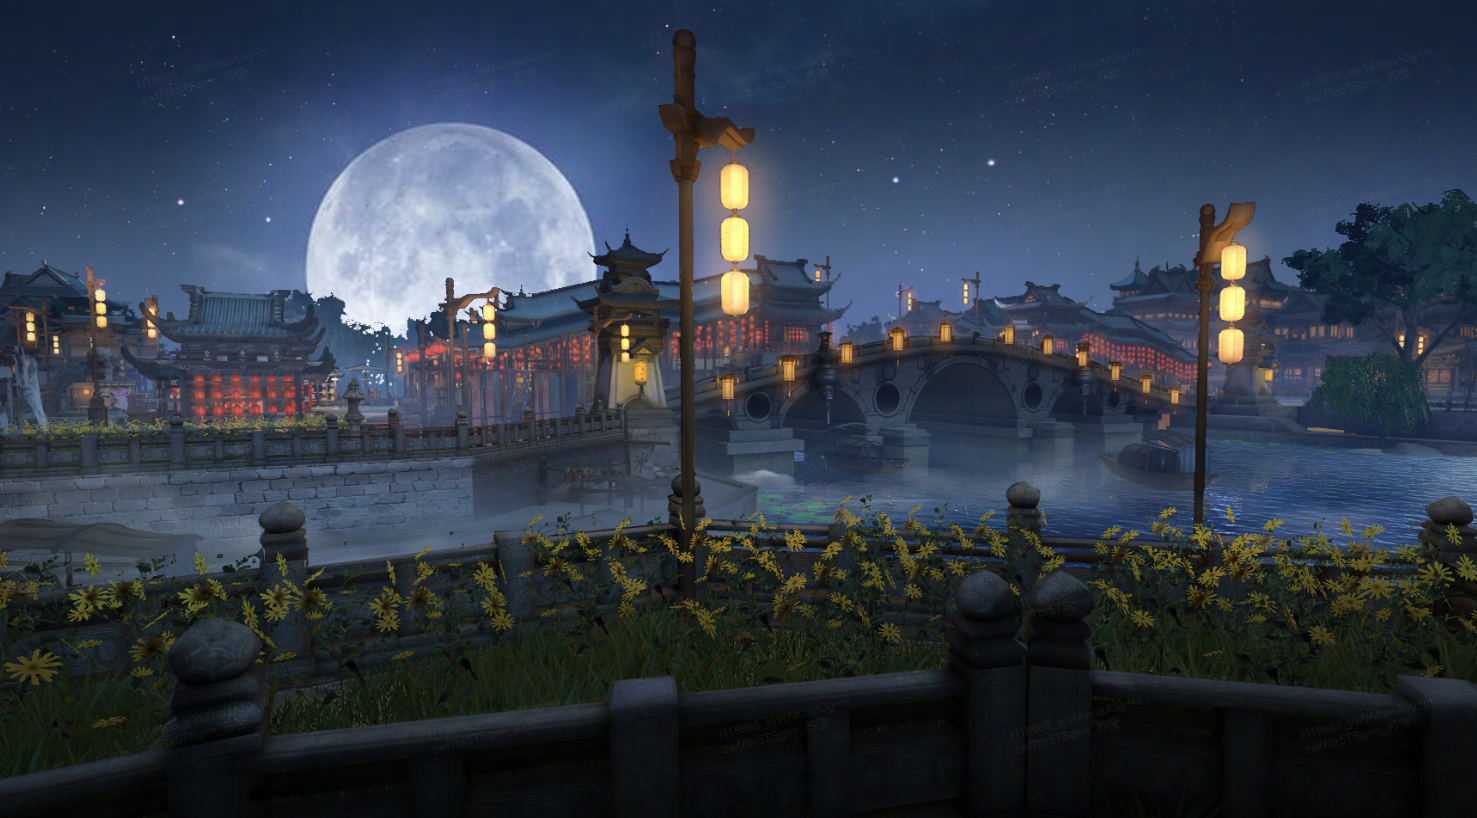 这是一幅亭台楼阁、古桥流水的中国古典风格夜景图，满月高悬，灯火辉煌，反映出宁静祥和的氛围。